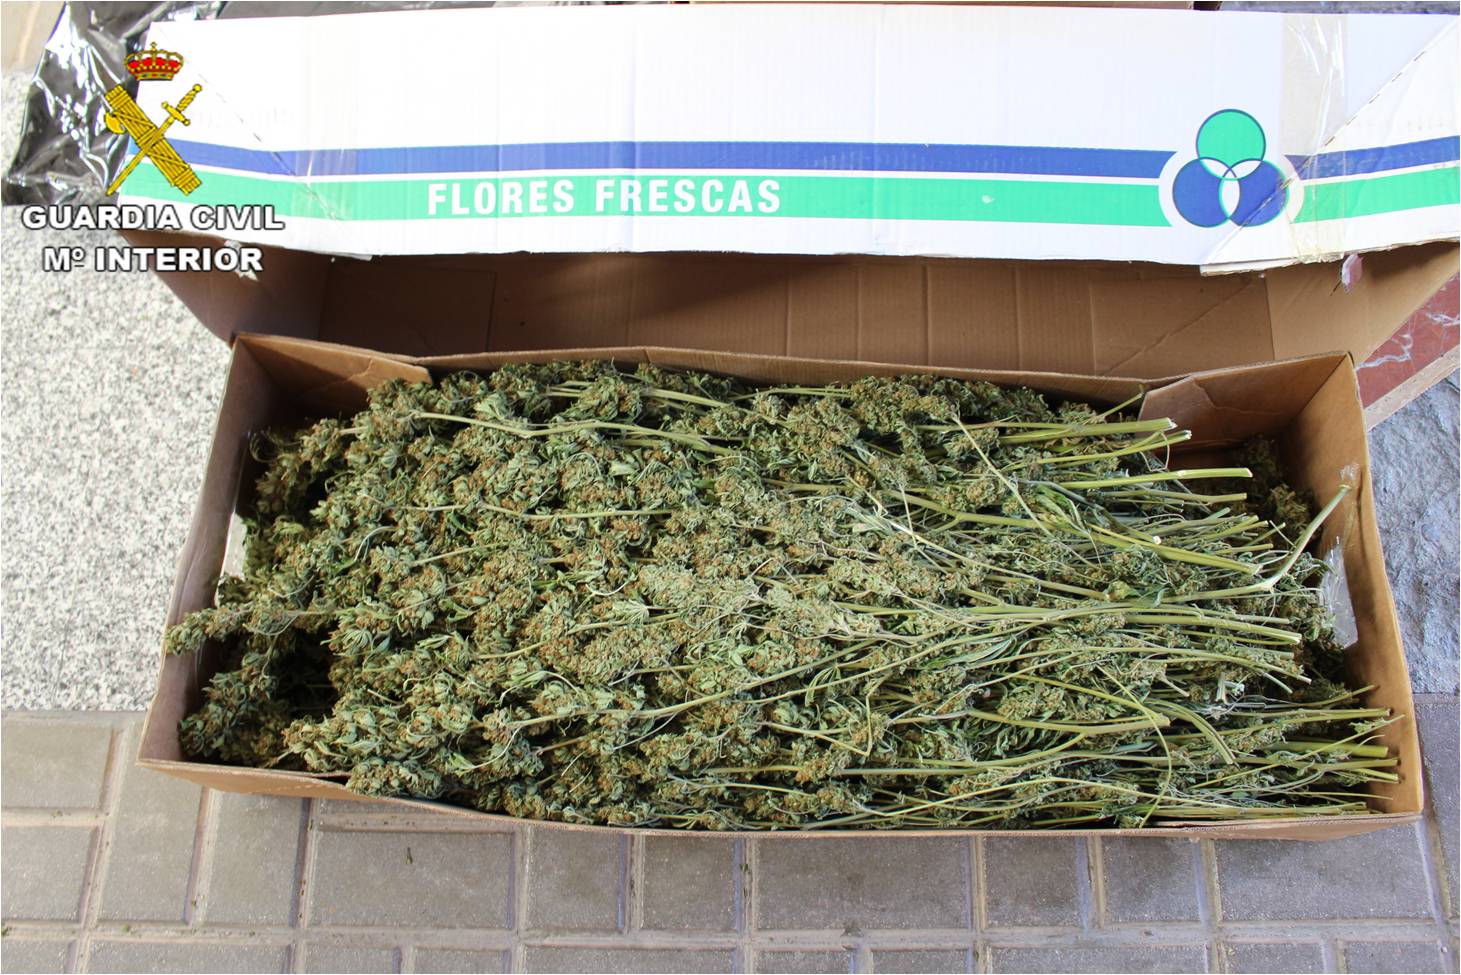 La Guardia Civil intercepta el transporte de cerca de 100 kilos de marihuana entre Alicante y Lleida